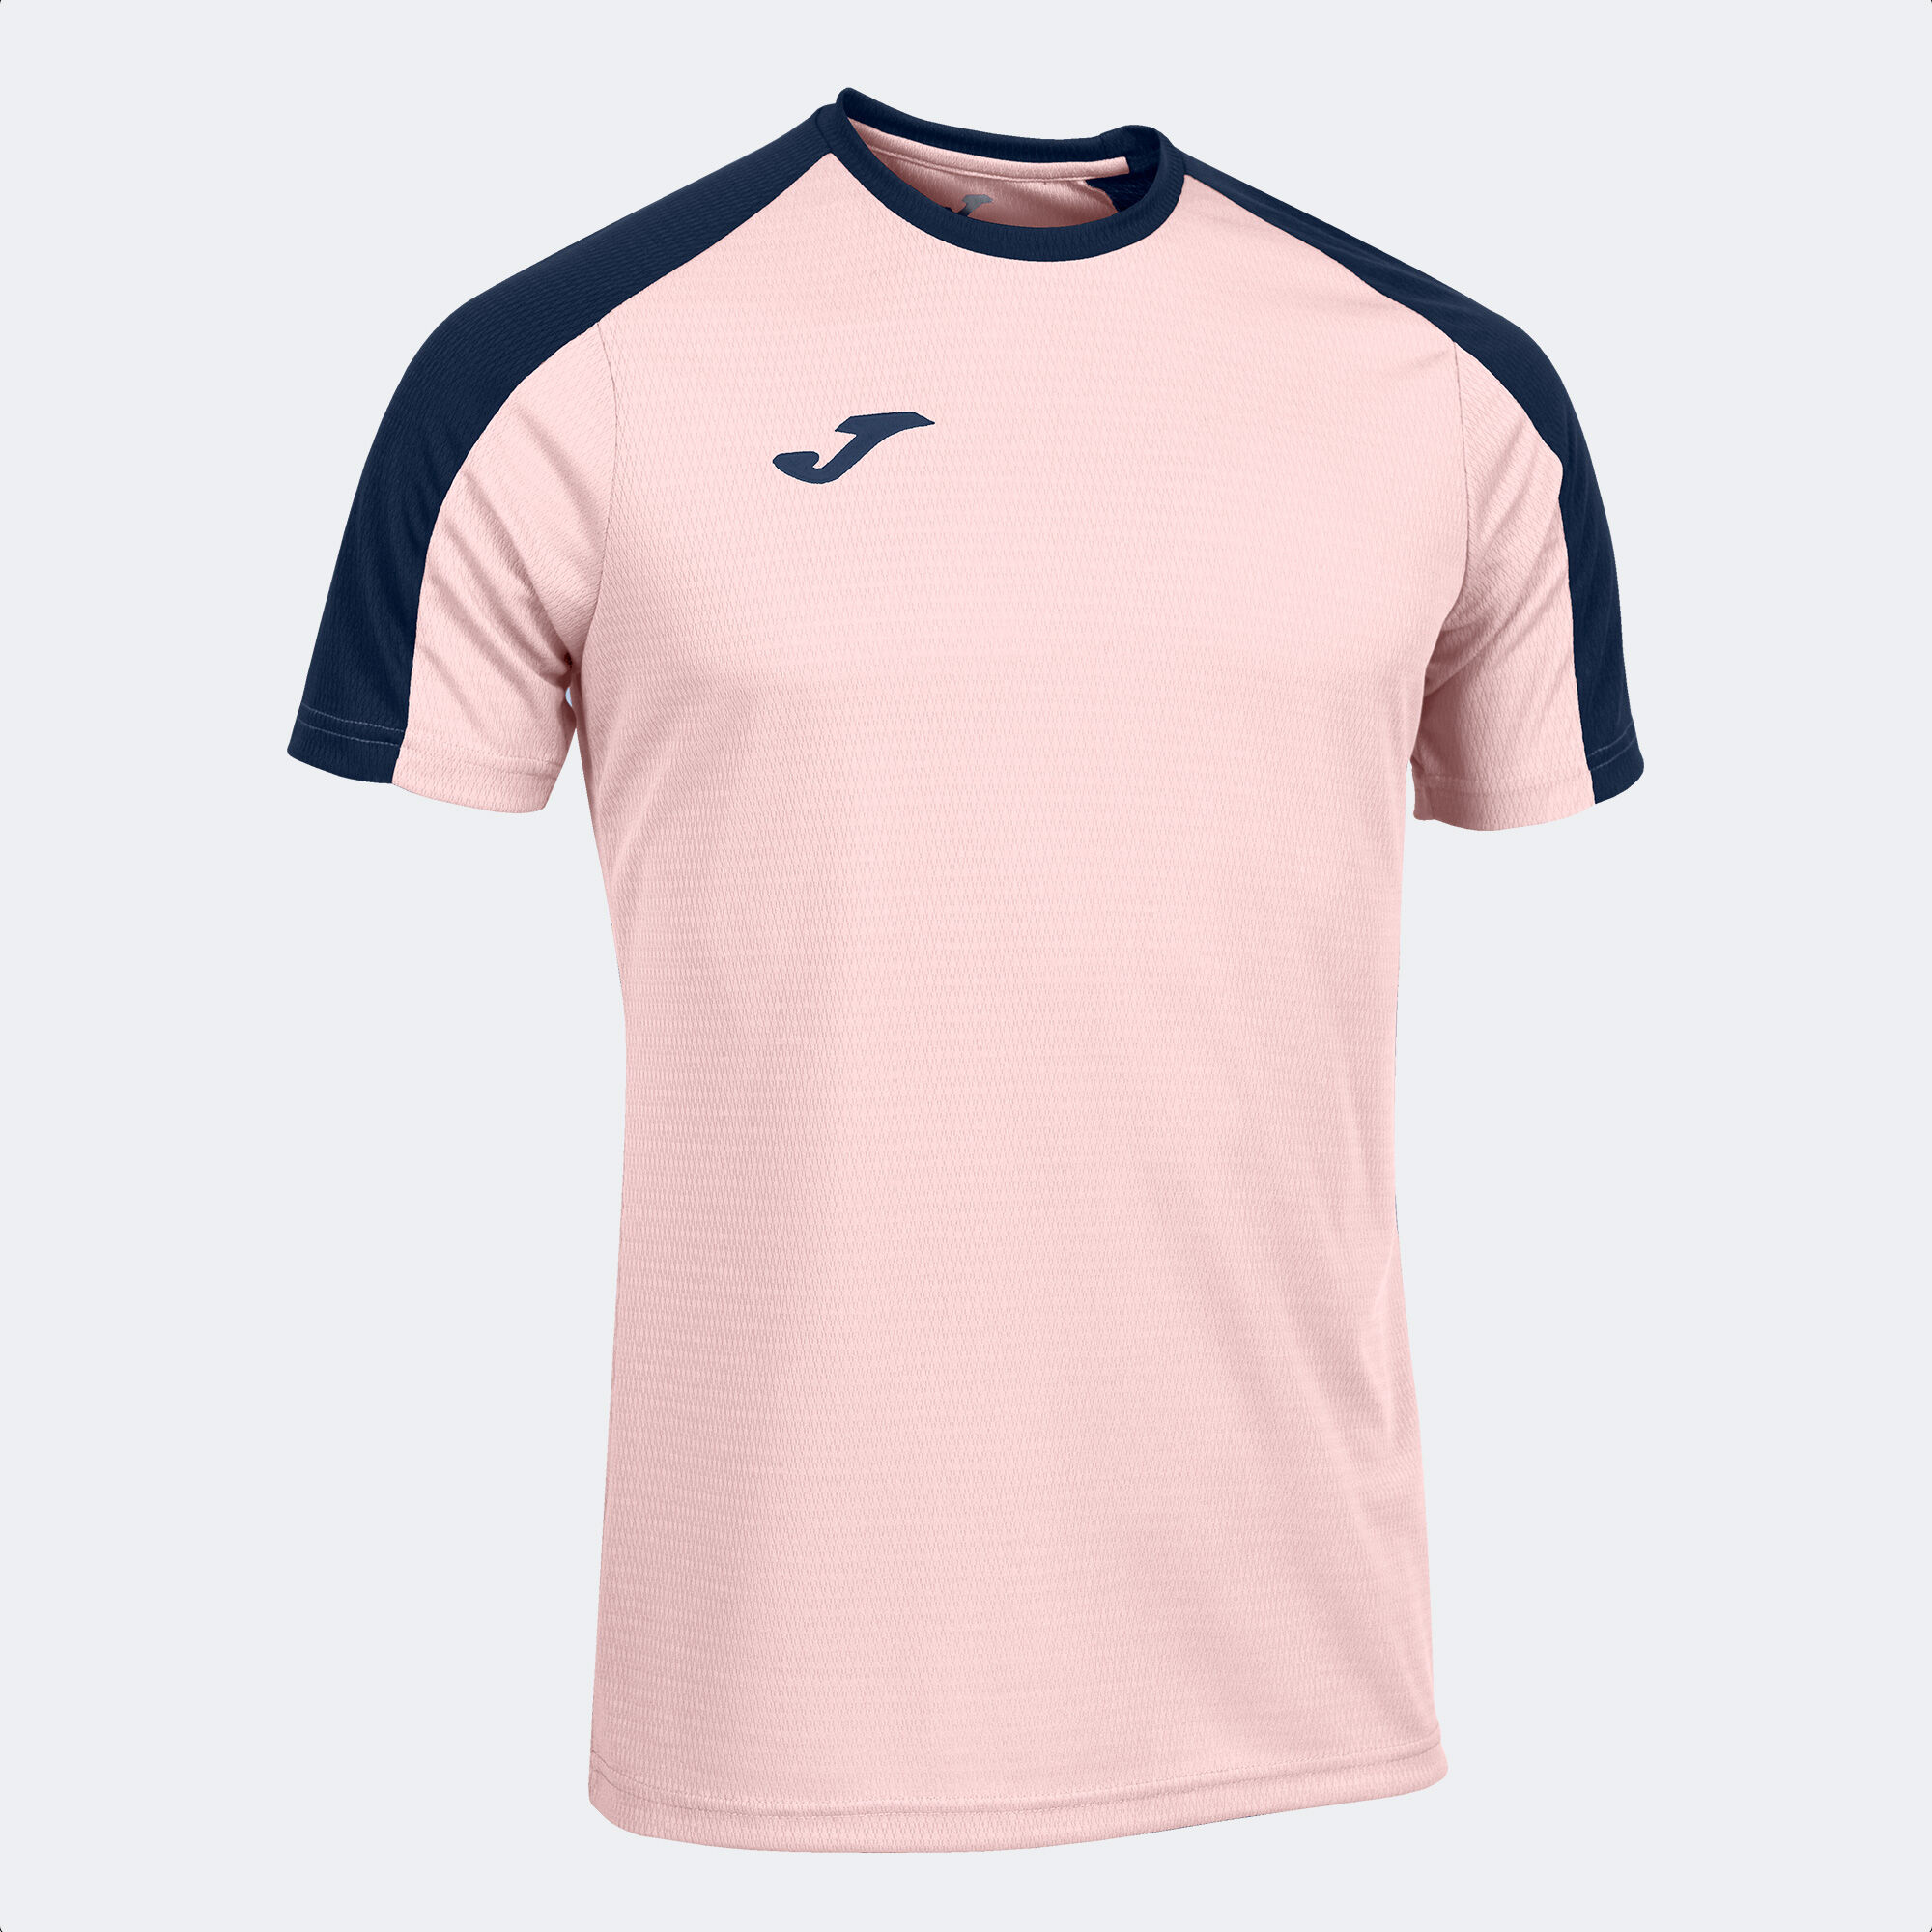 Camiseta manga corta hombre Eco Championship rosa marino